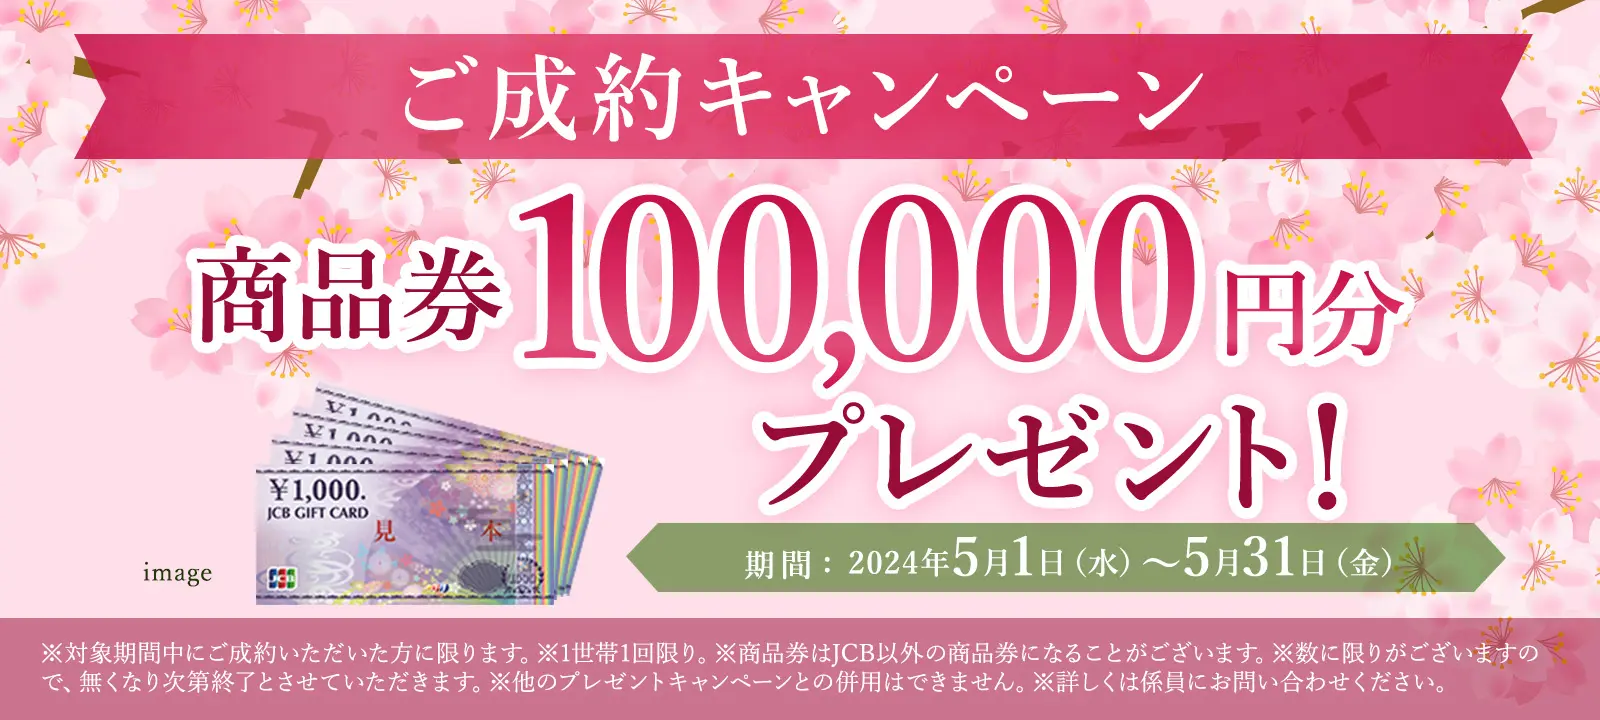 イオン商品券100,000円分プレゼント